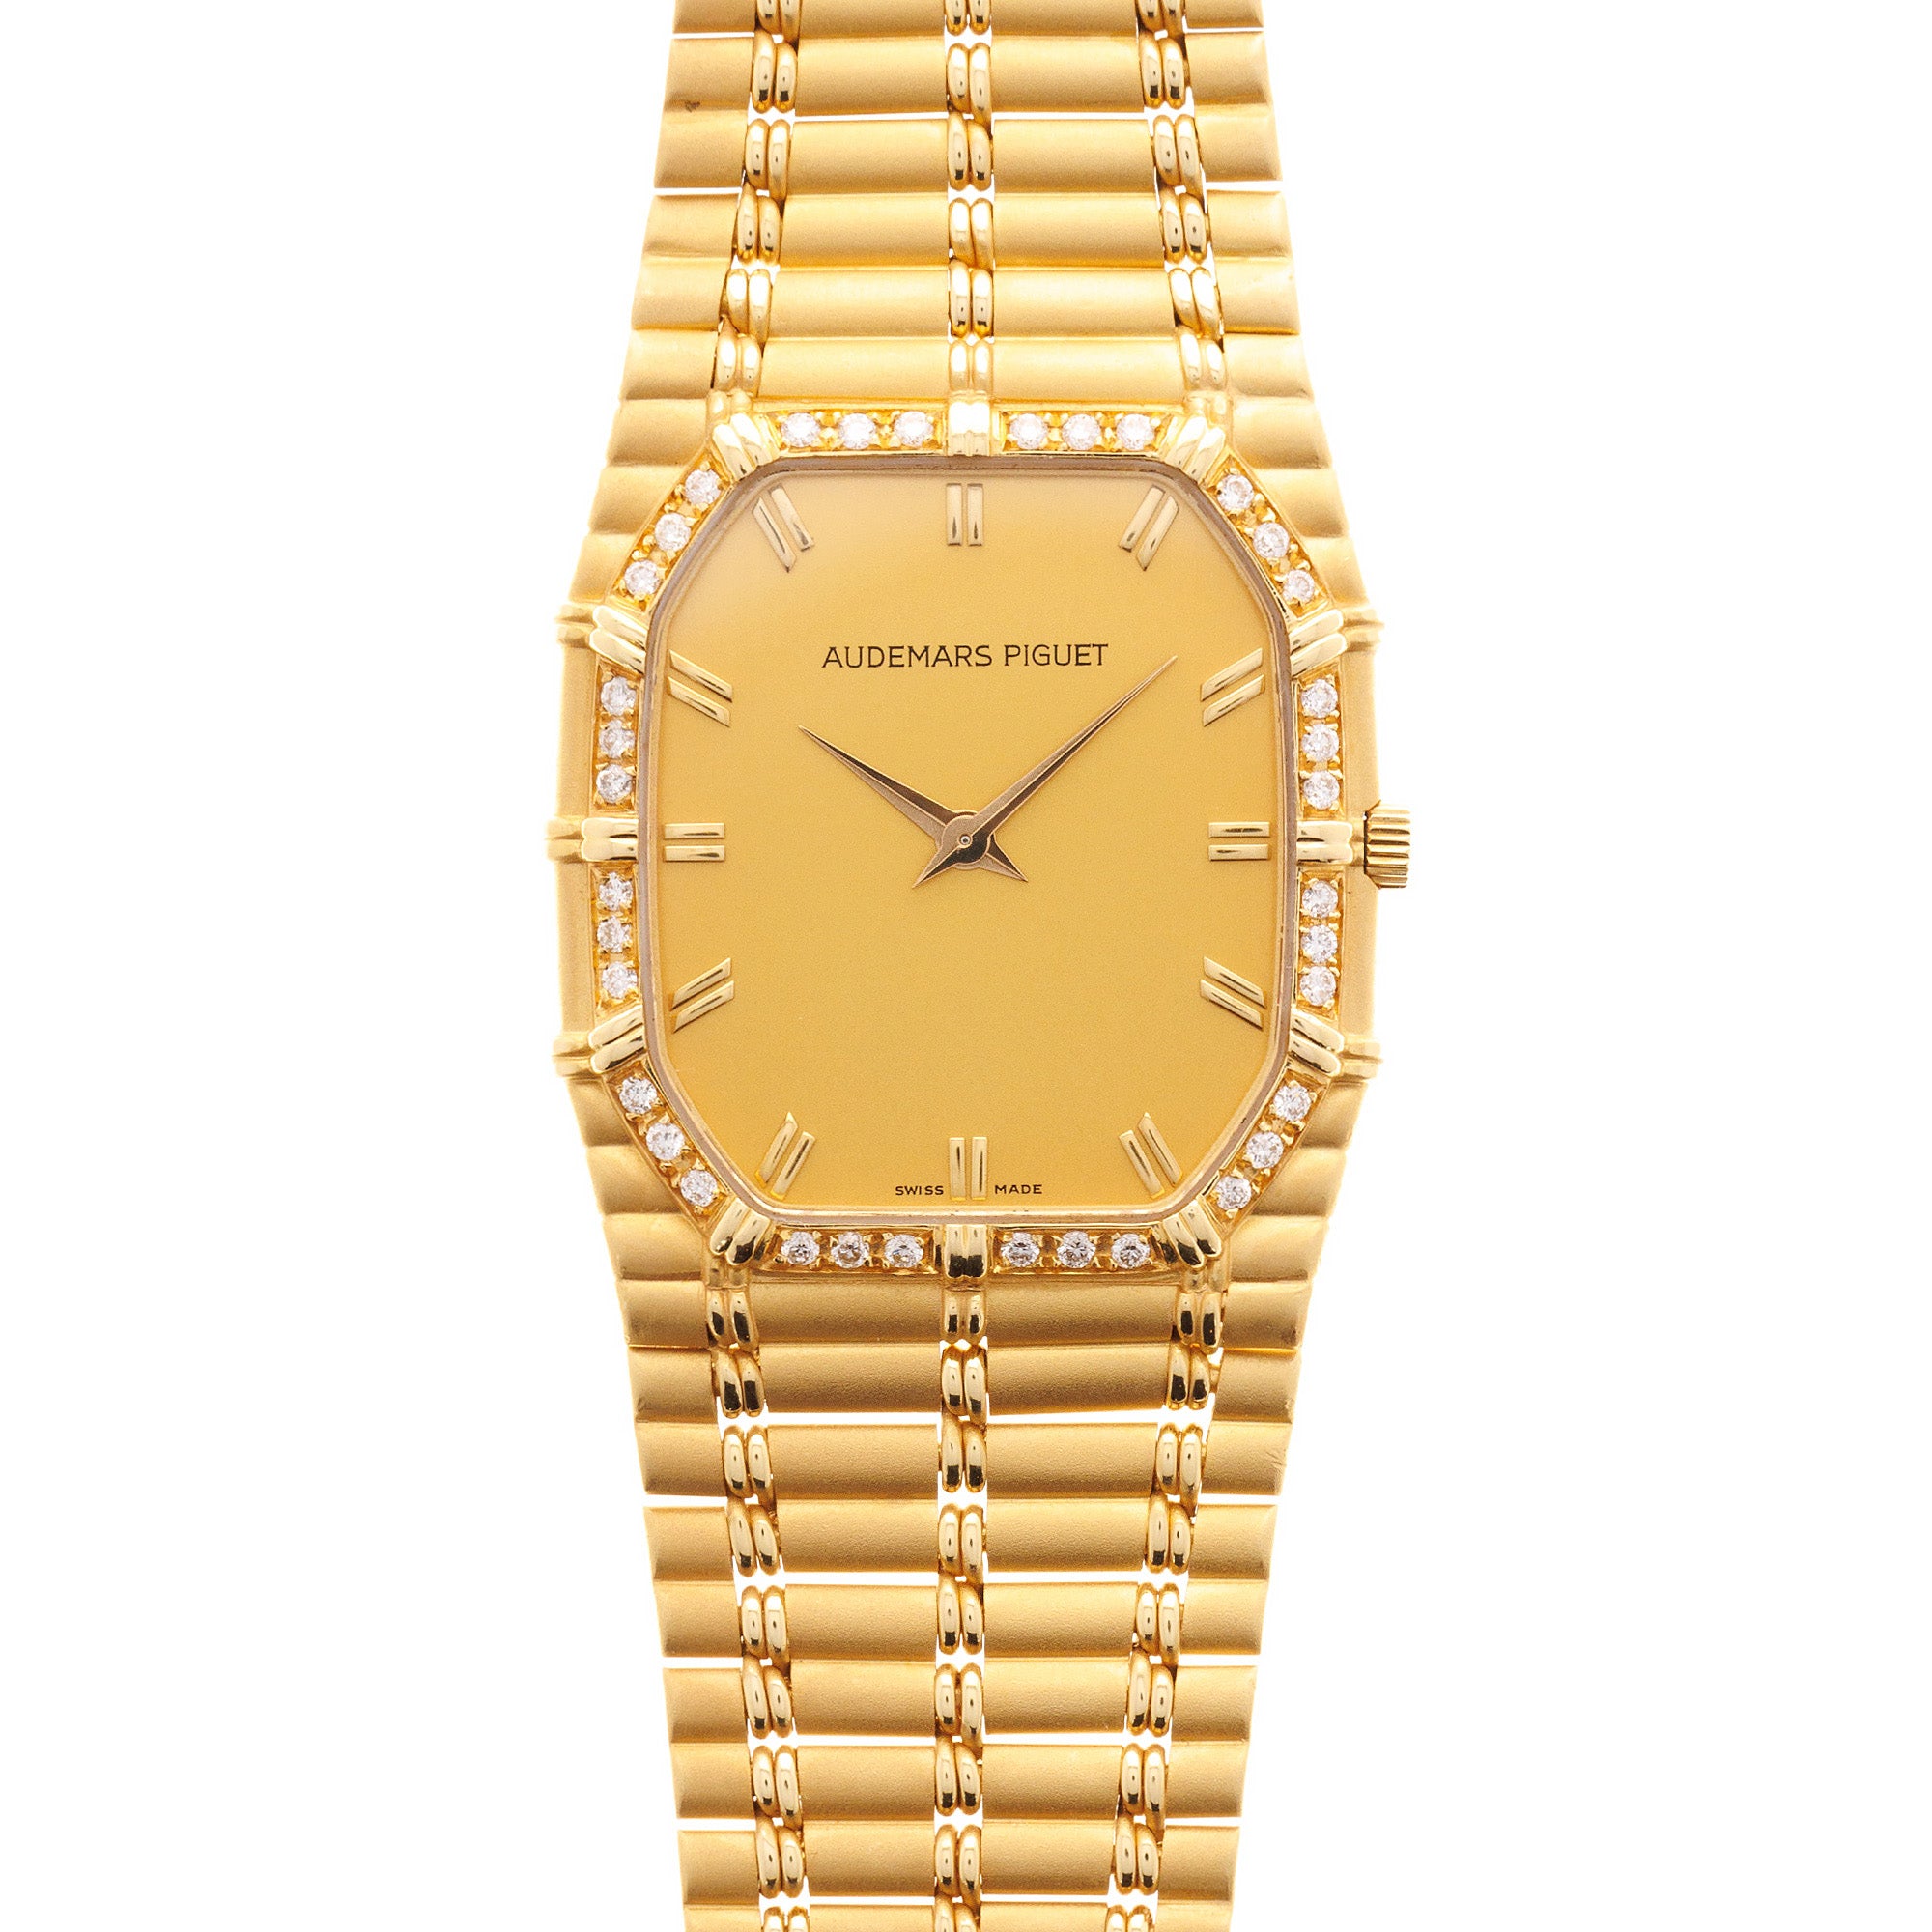 Audemars Piguet - Audemars Piguet Yellow Gold Bamboo Diamond Watch - The Keystone Watches